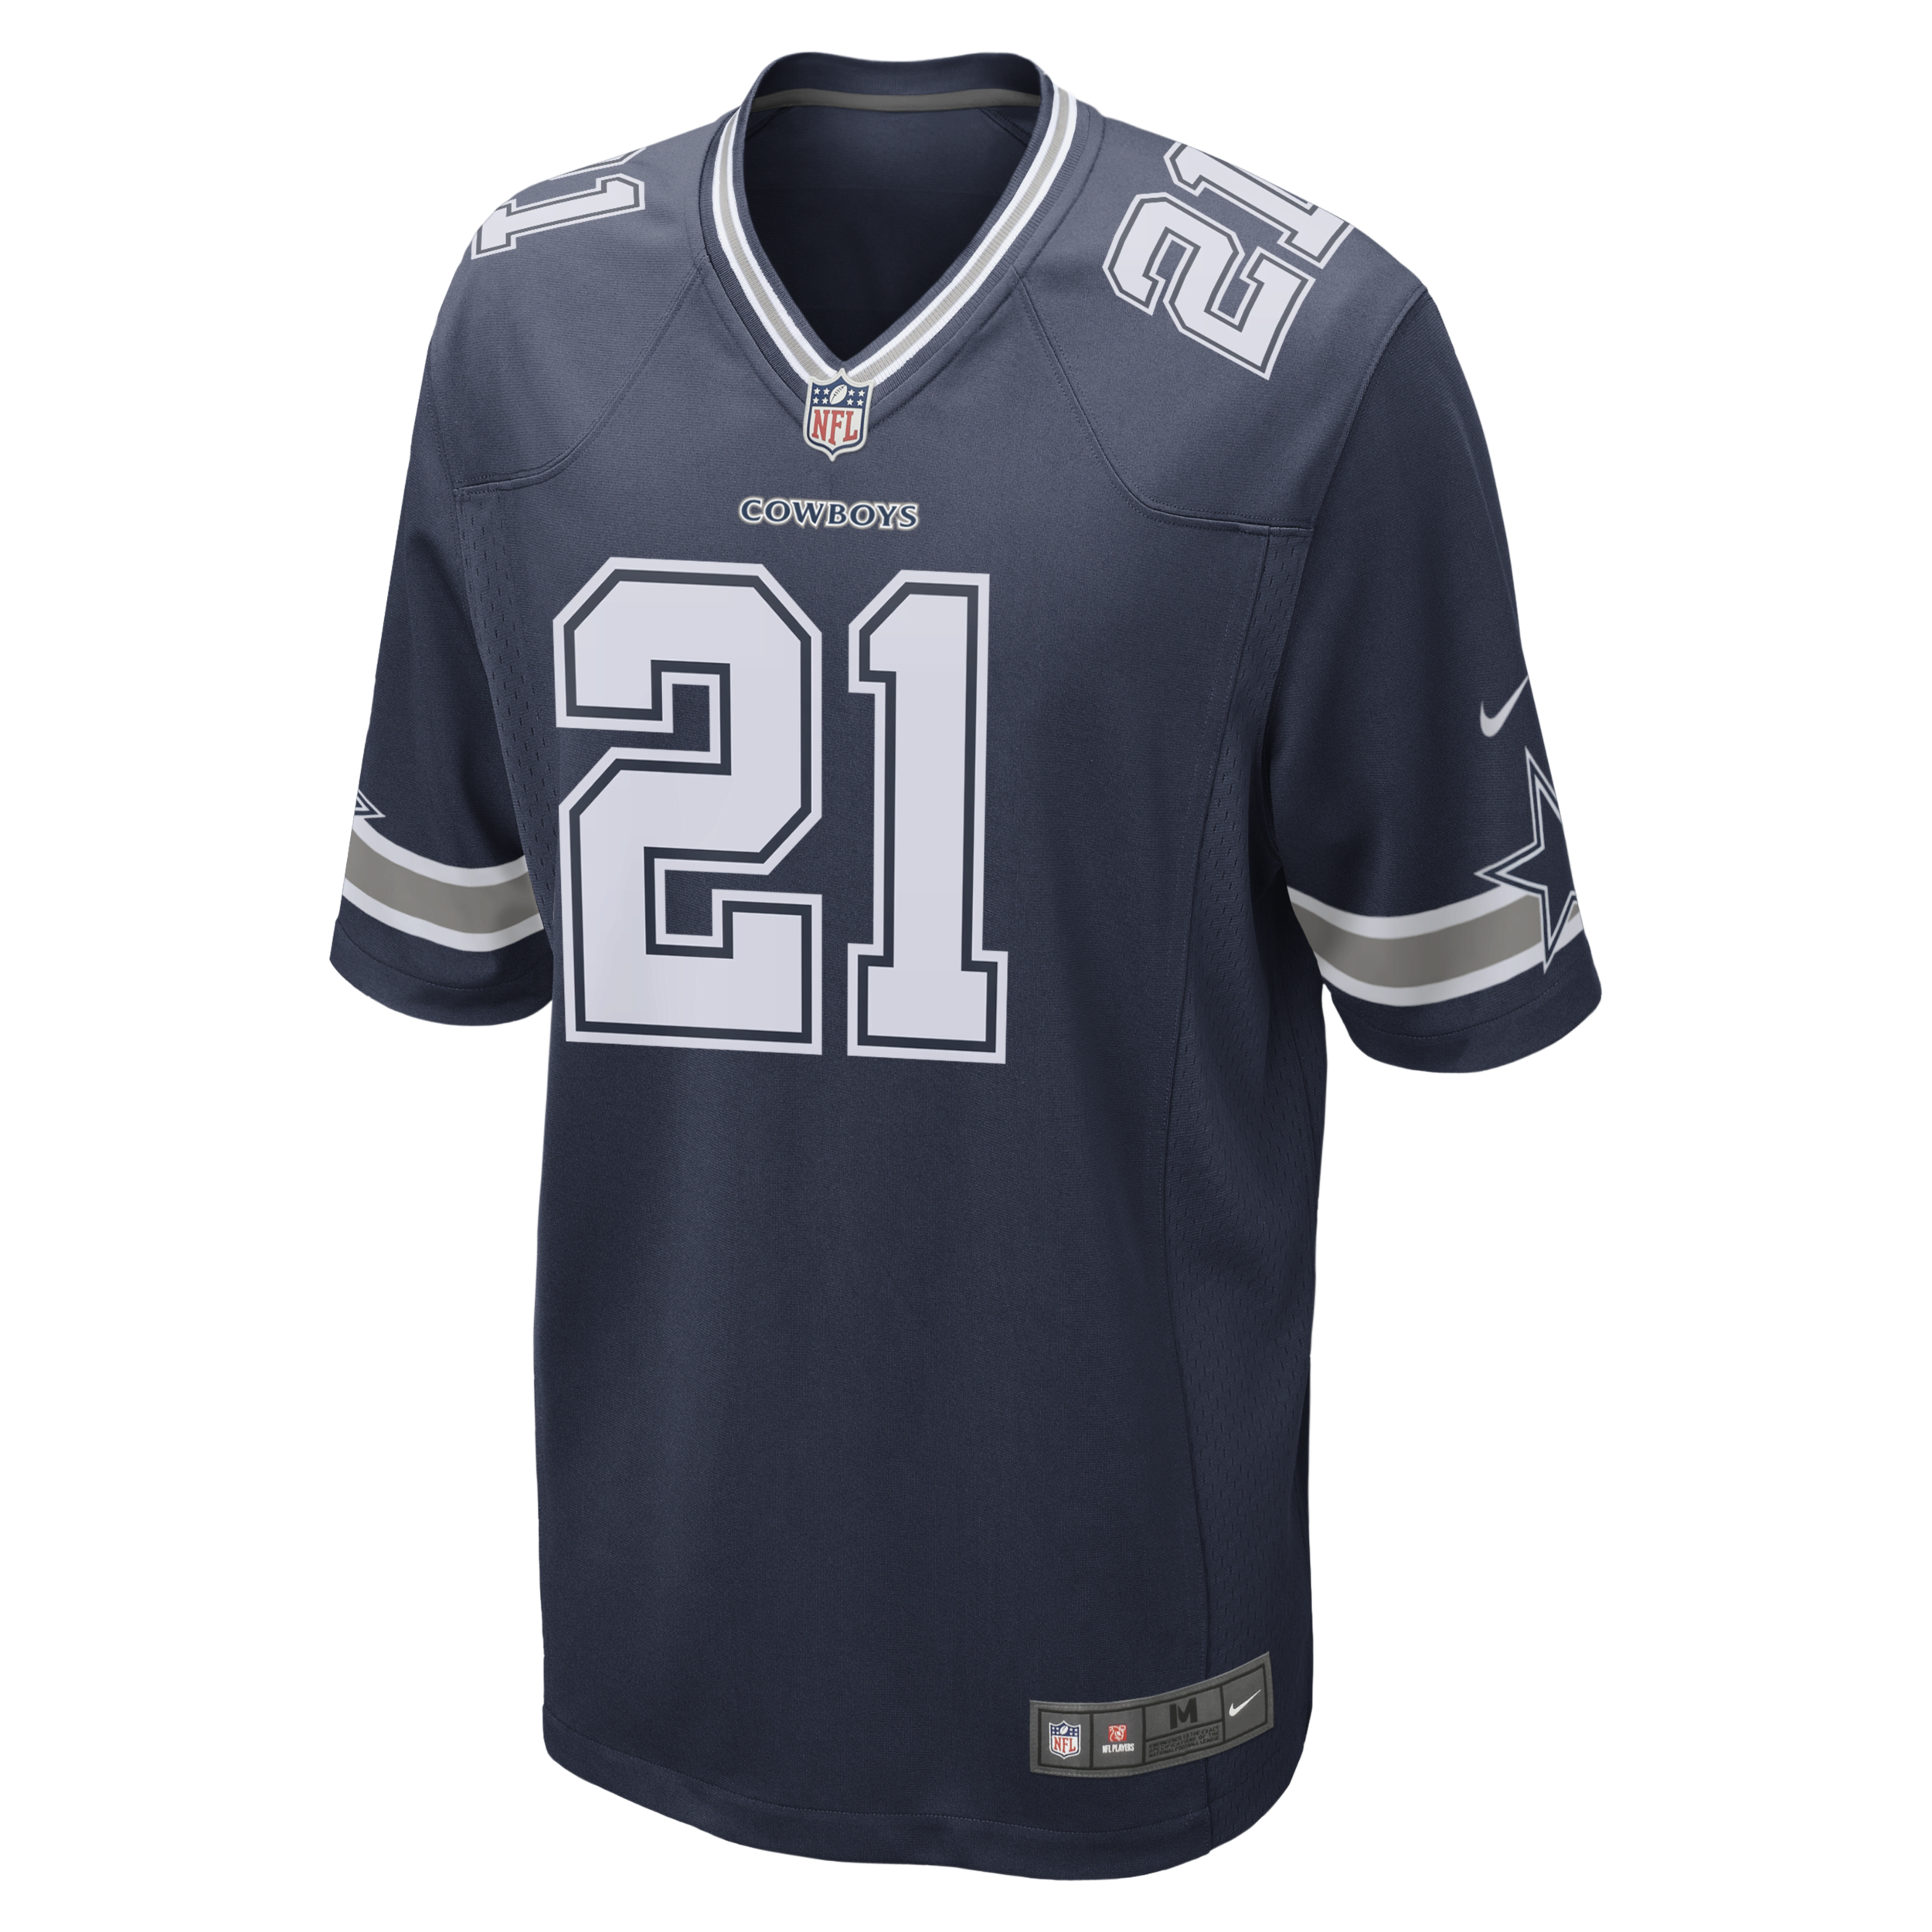 Nike NFL Dallas Cowboys (Ezekiel Elliott) American-football-wedstrijdjersey voor heren - Blauw